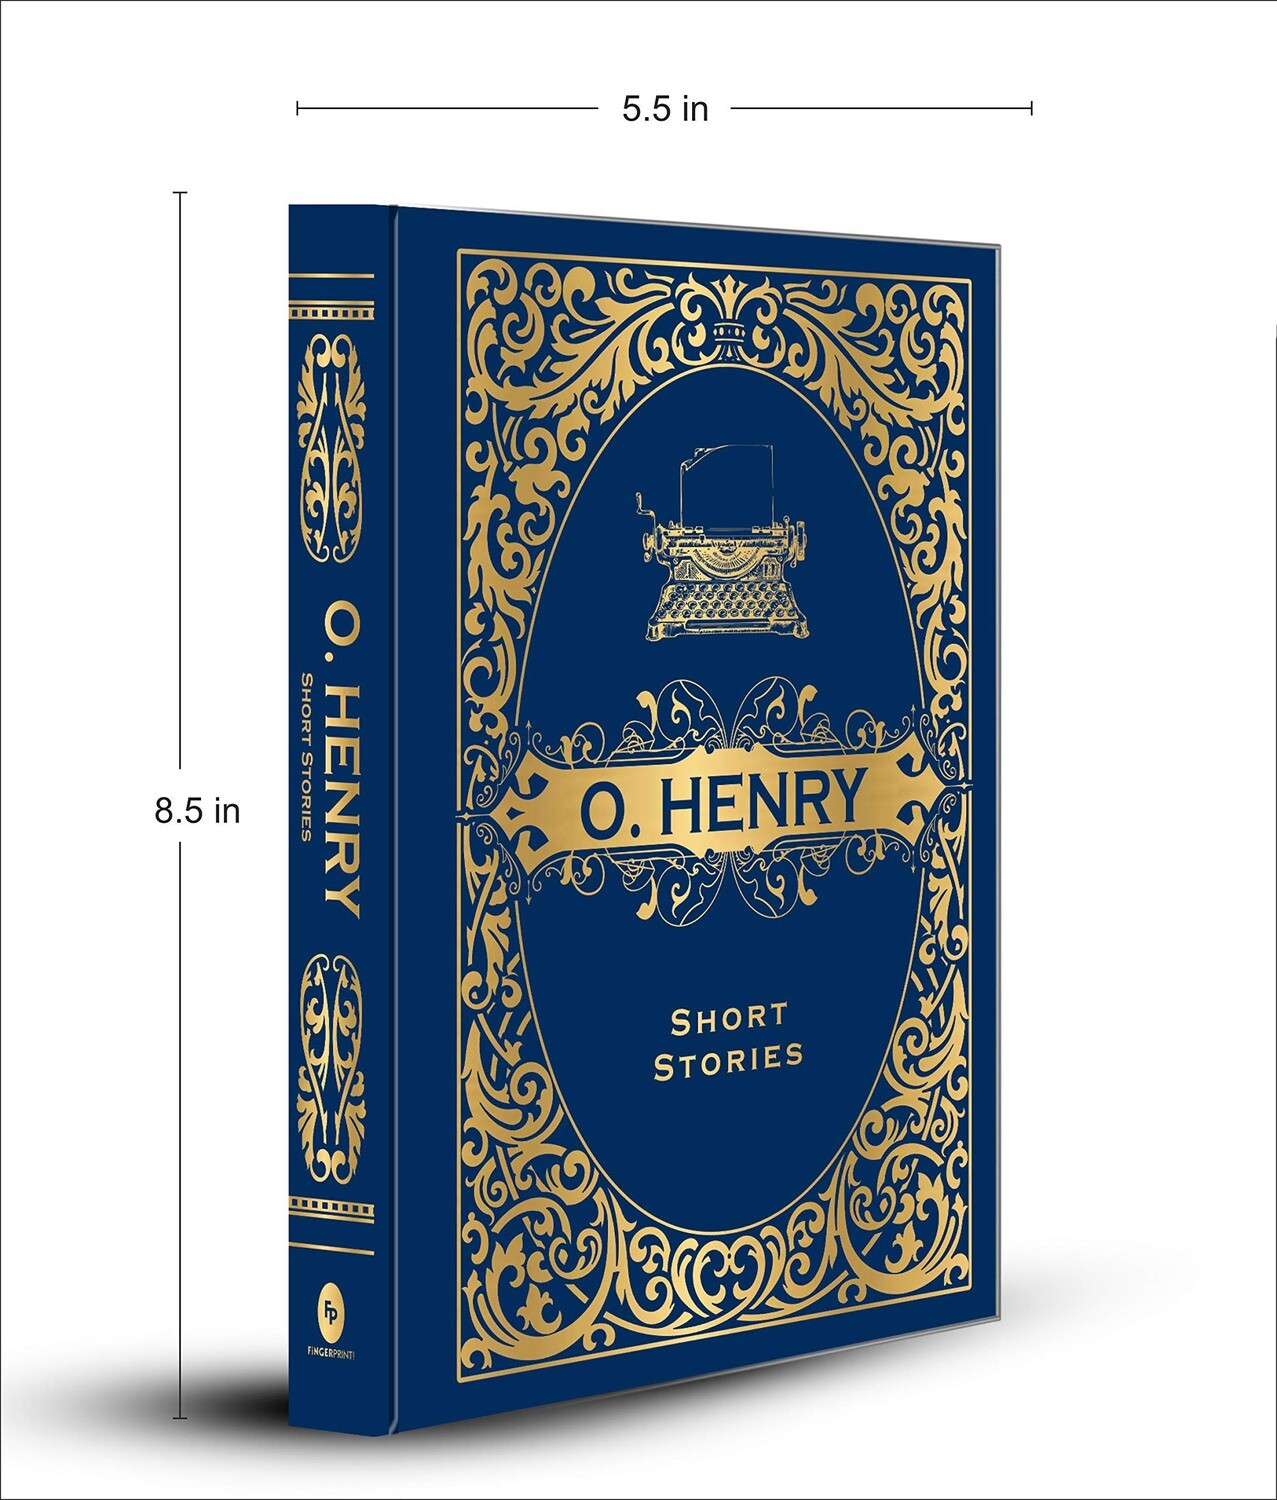 O. HENRY SHORT STORIES - FINGERPRINT